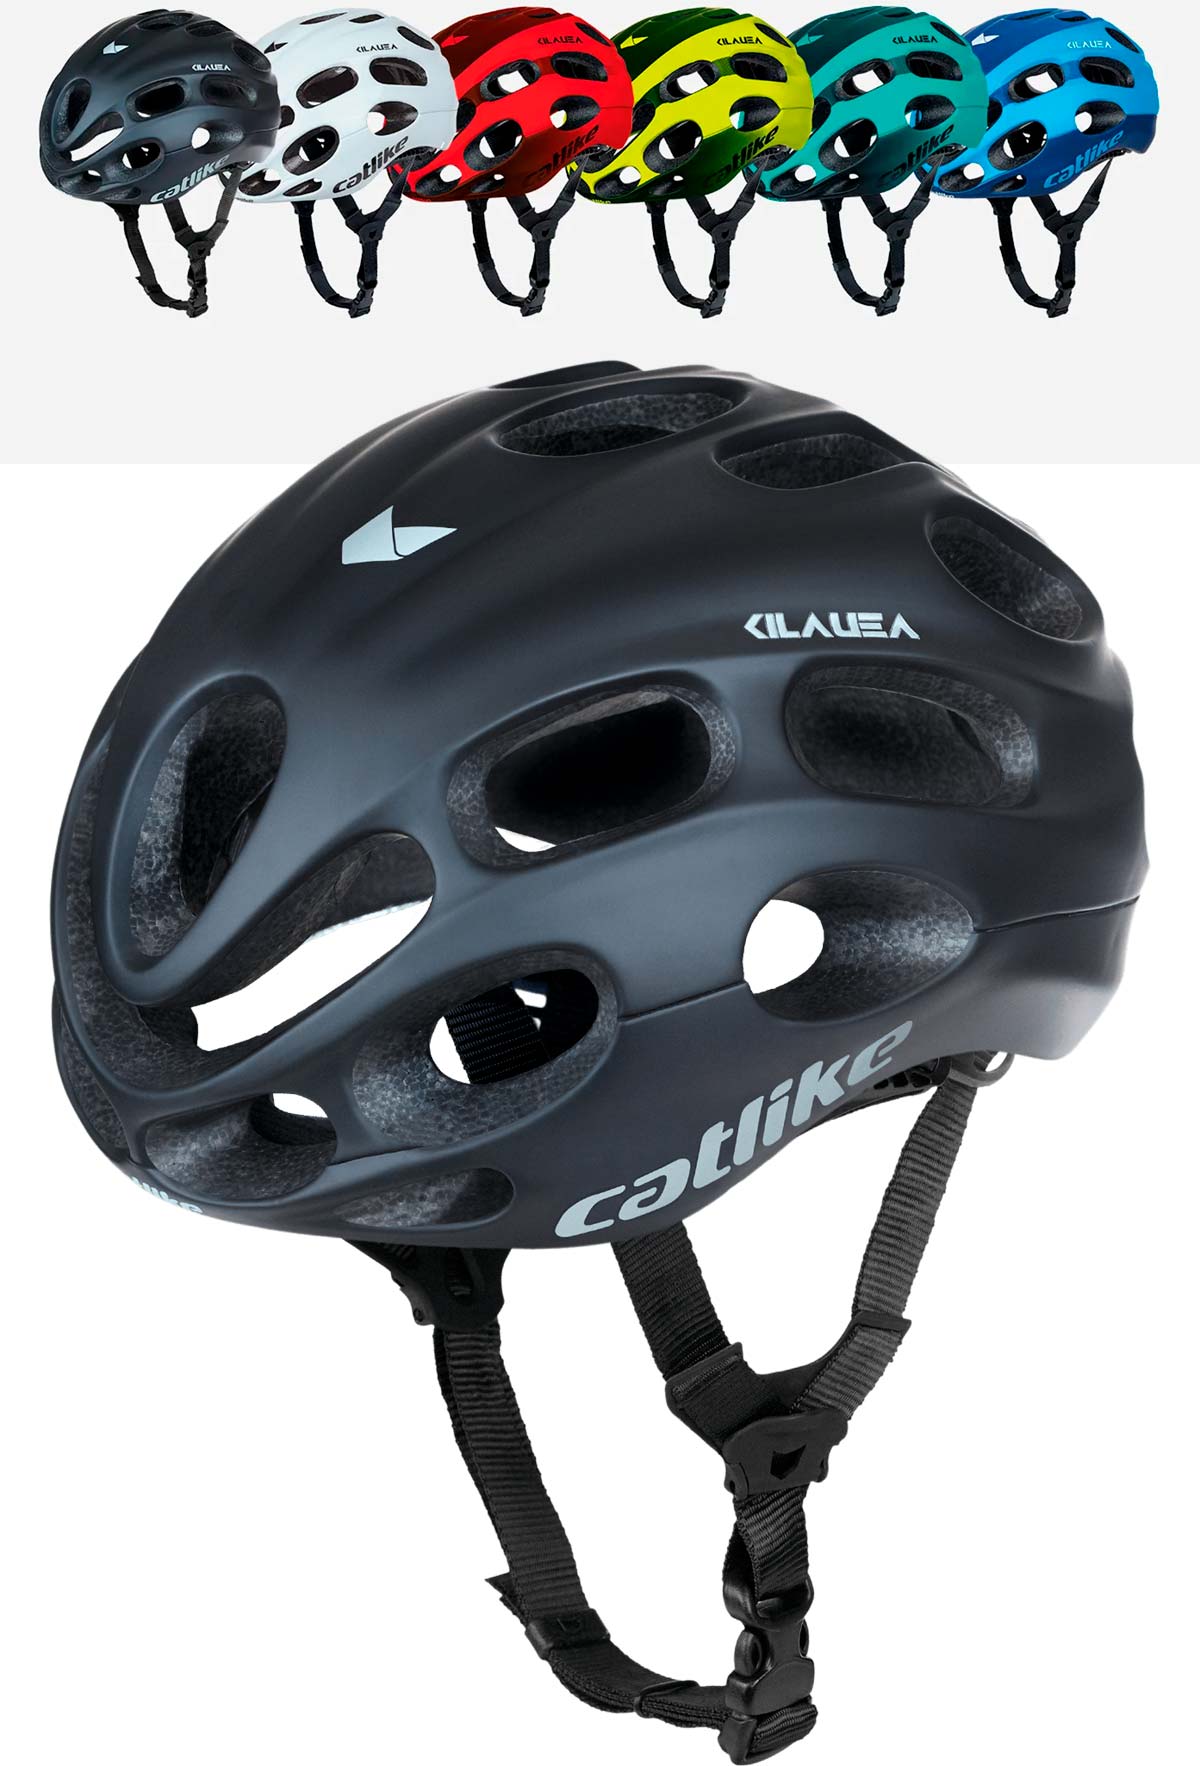 En TodoMountainBike: Catlike Kilauea, un casco con el mejor compromiso entre rendimiento aerodinámico y ventilación